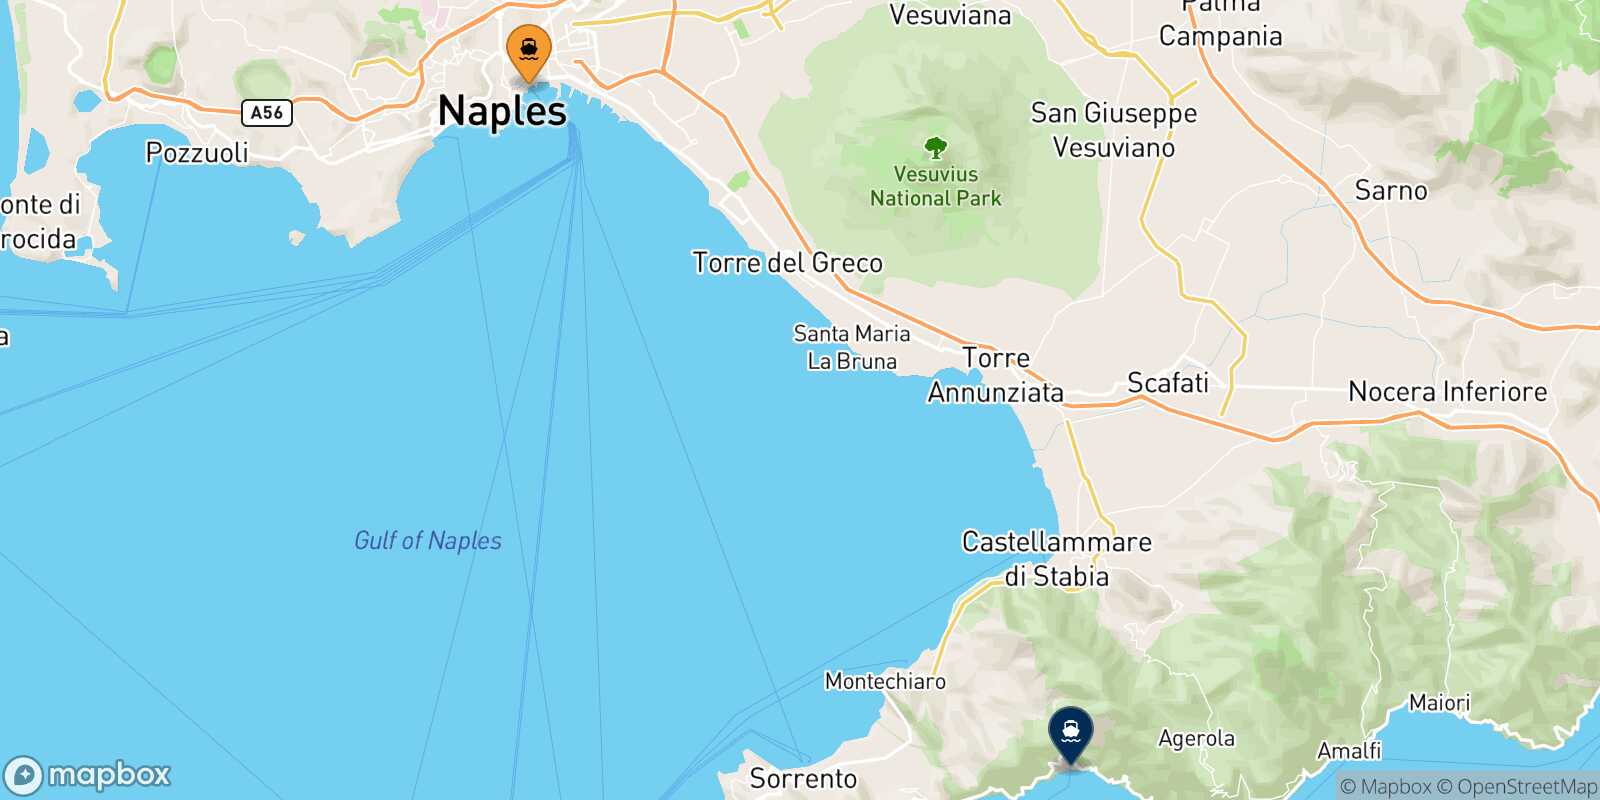 Mapa de la ruta Nápoles Beverello Positano